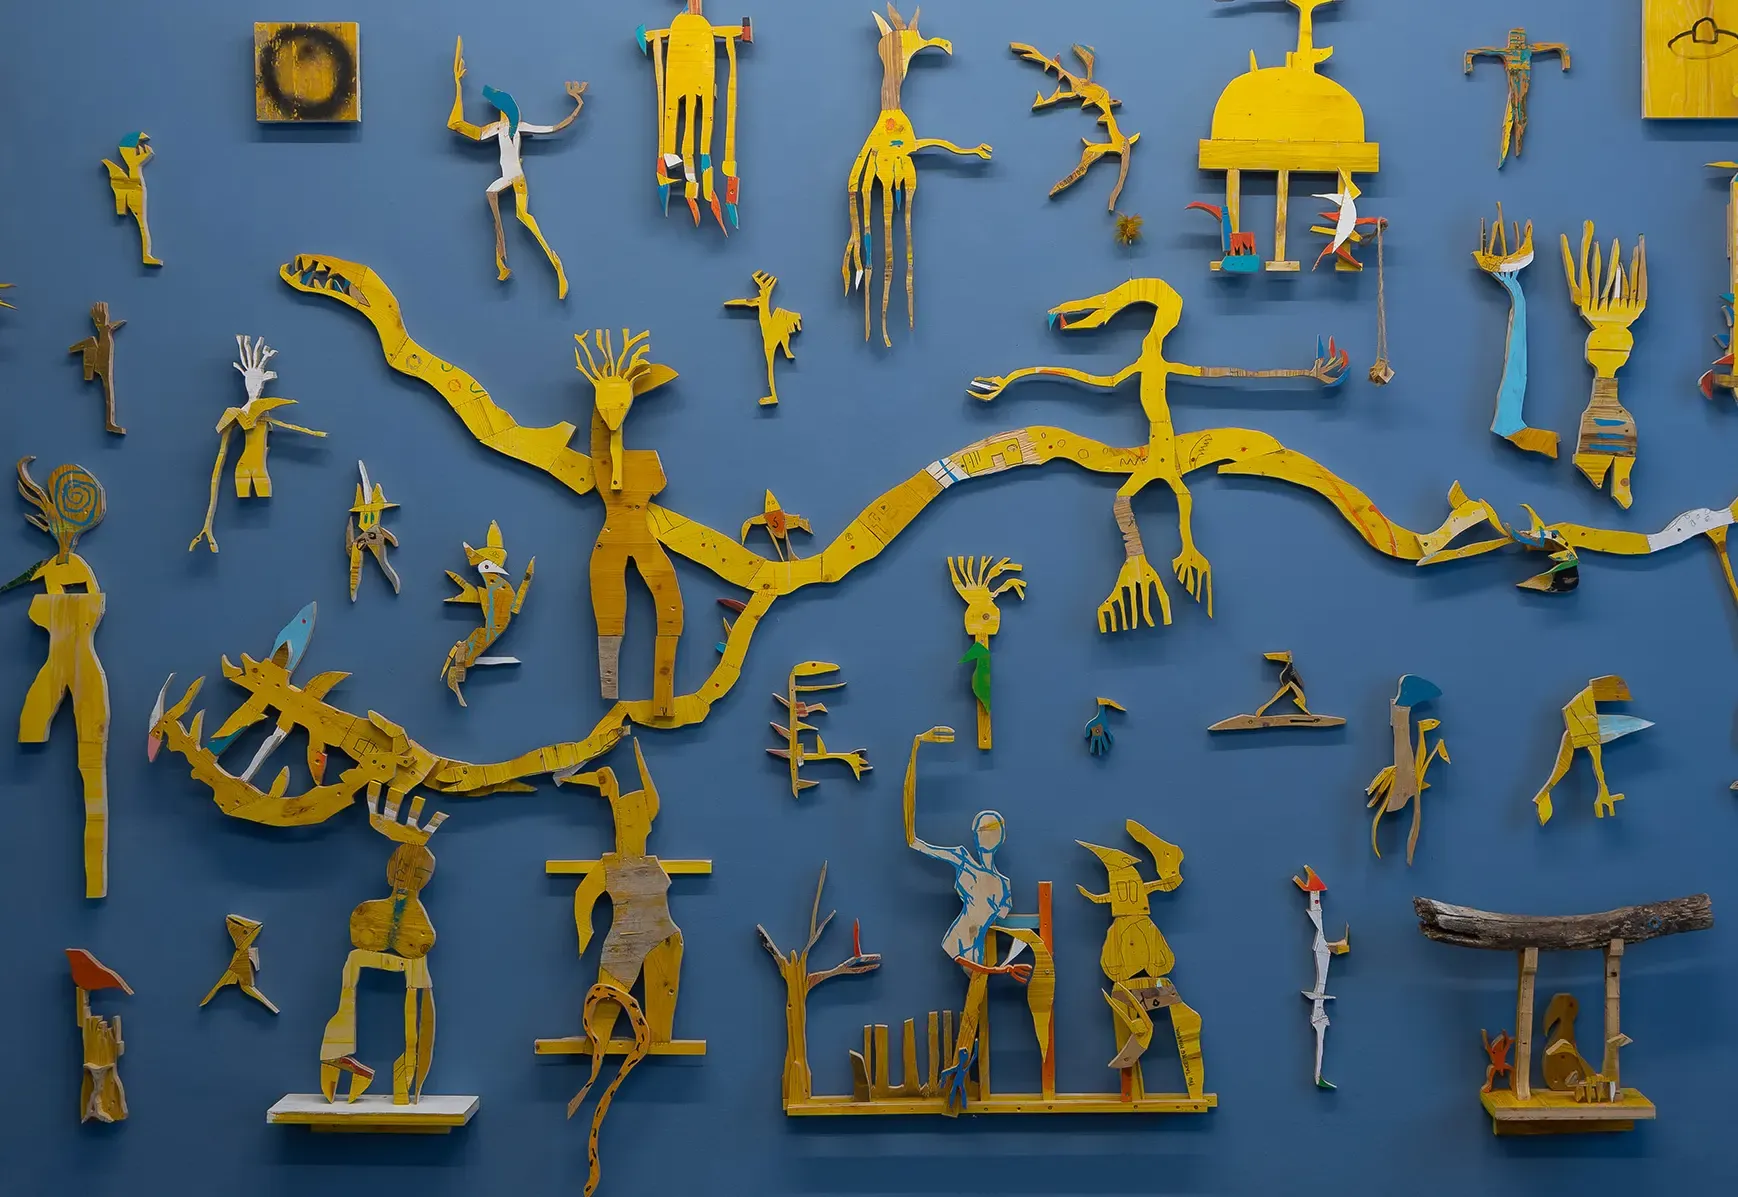 rotor Graz exhibition view, artist Ernst Koslitsch presents his yellow universe